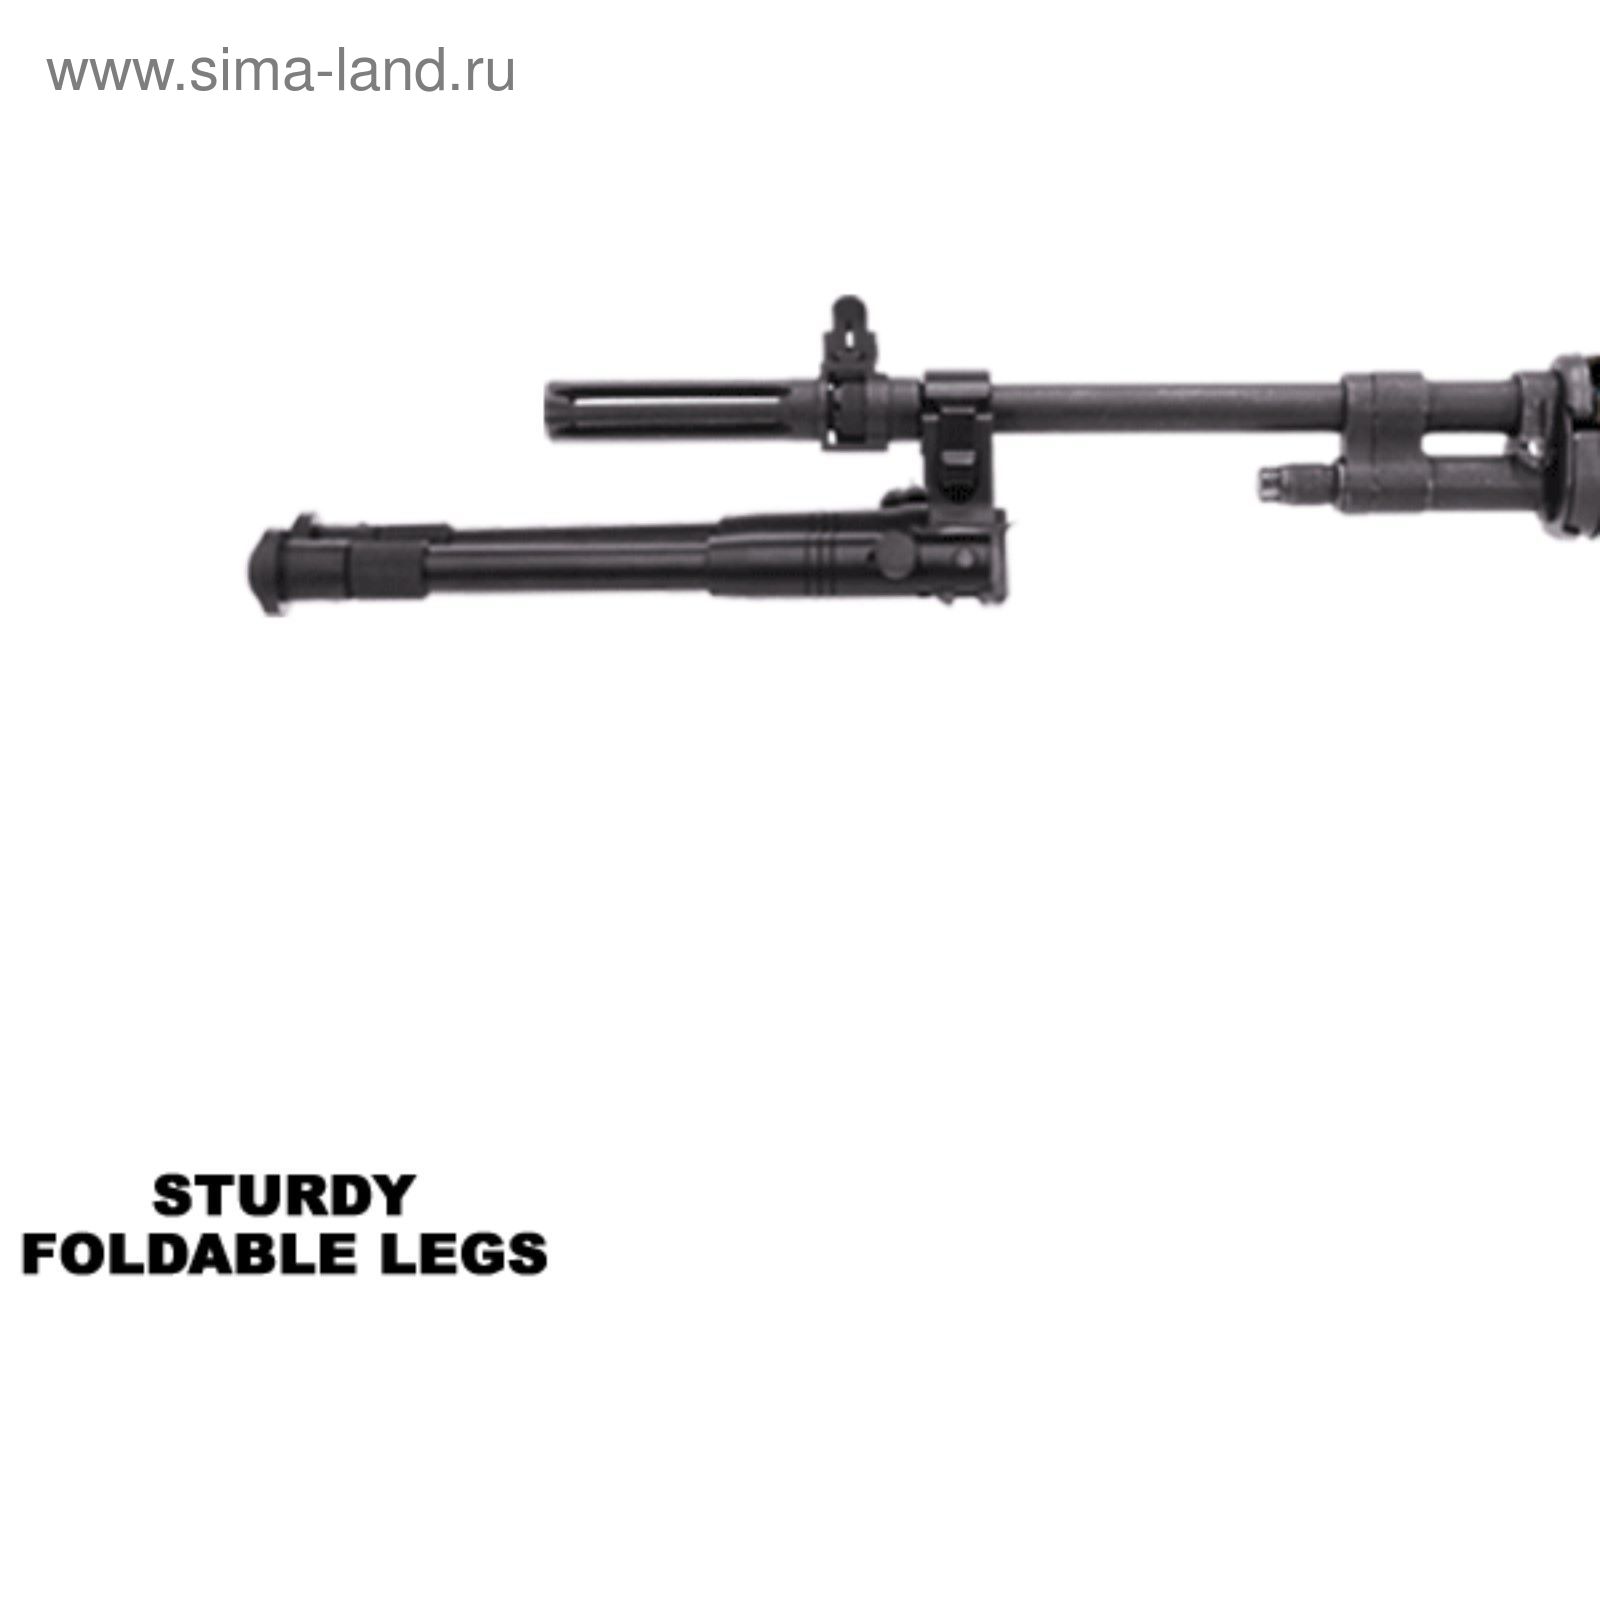 Сошки UTG для установки на ствол оружия, регулируемые, усиленные, высота от 22 до 26 см